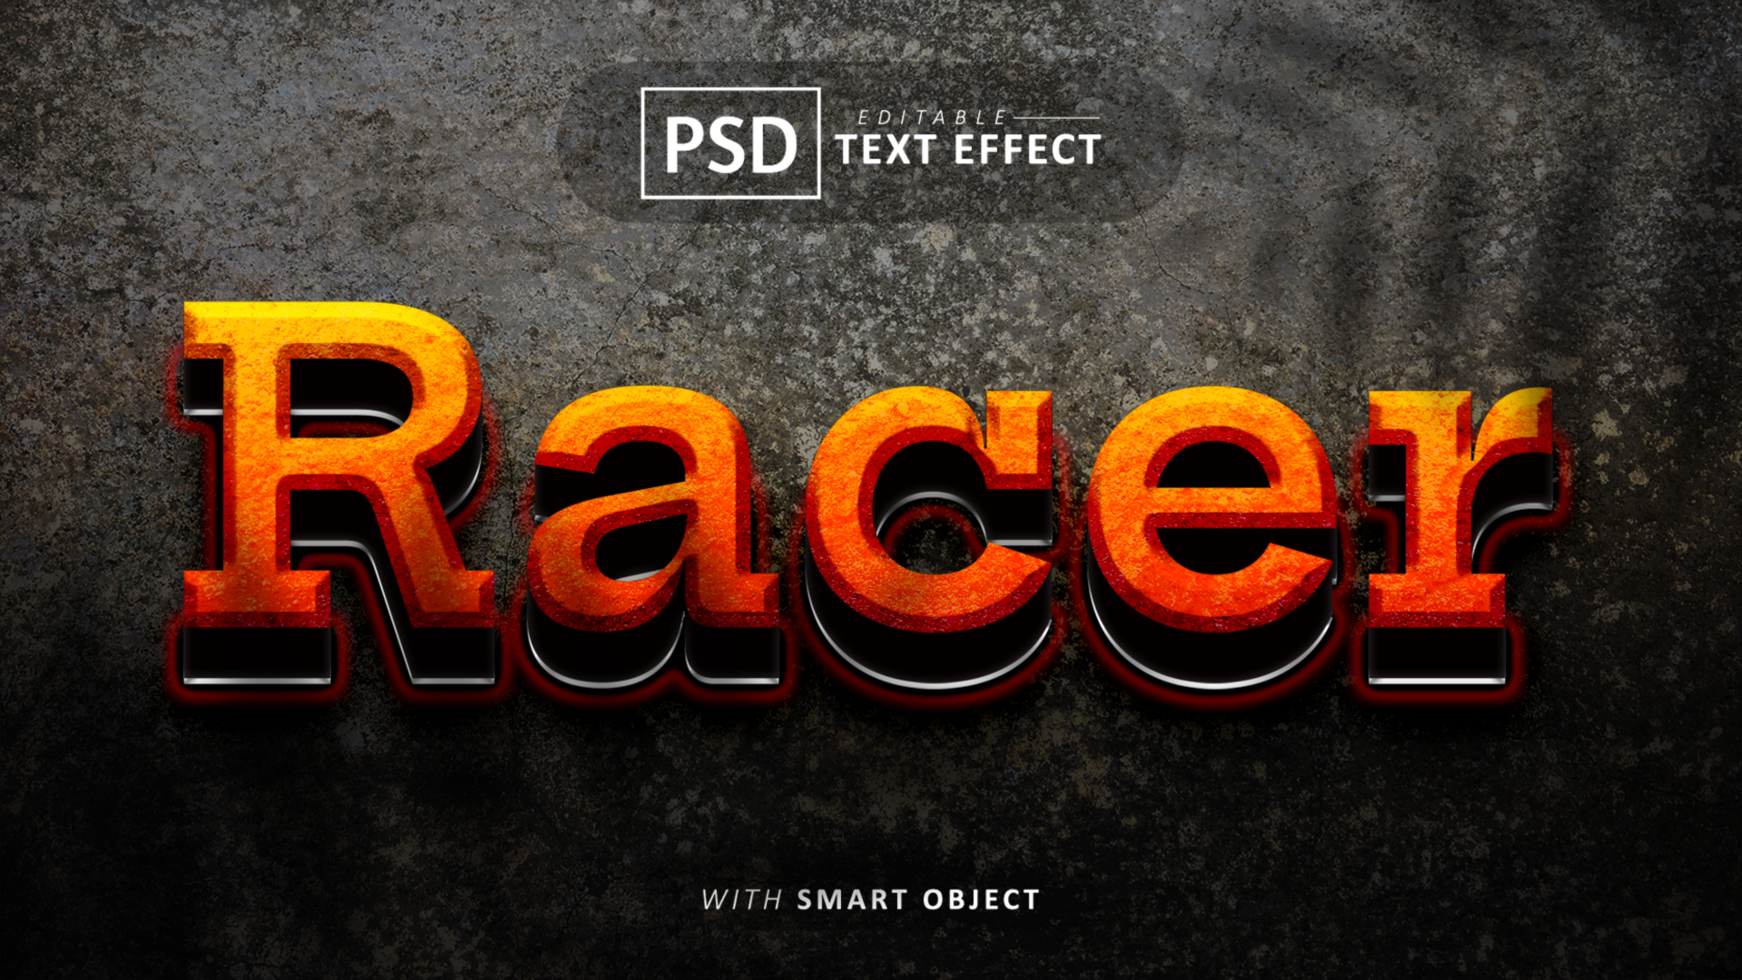 Racer text effect editable psd